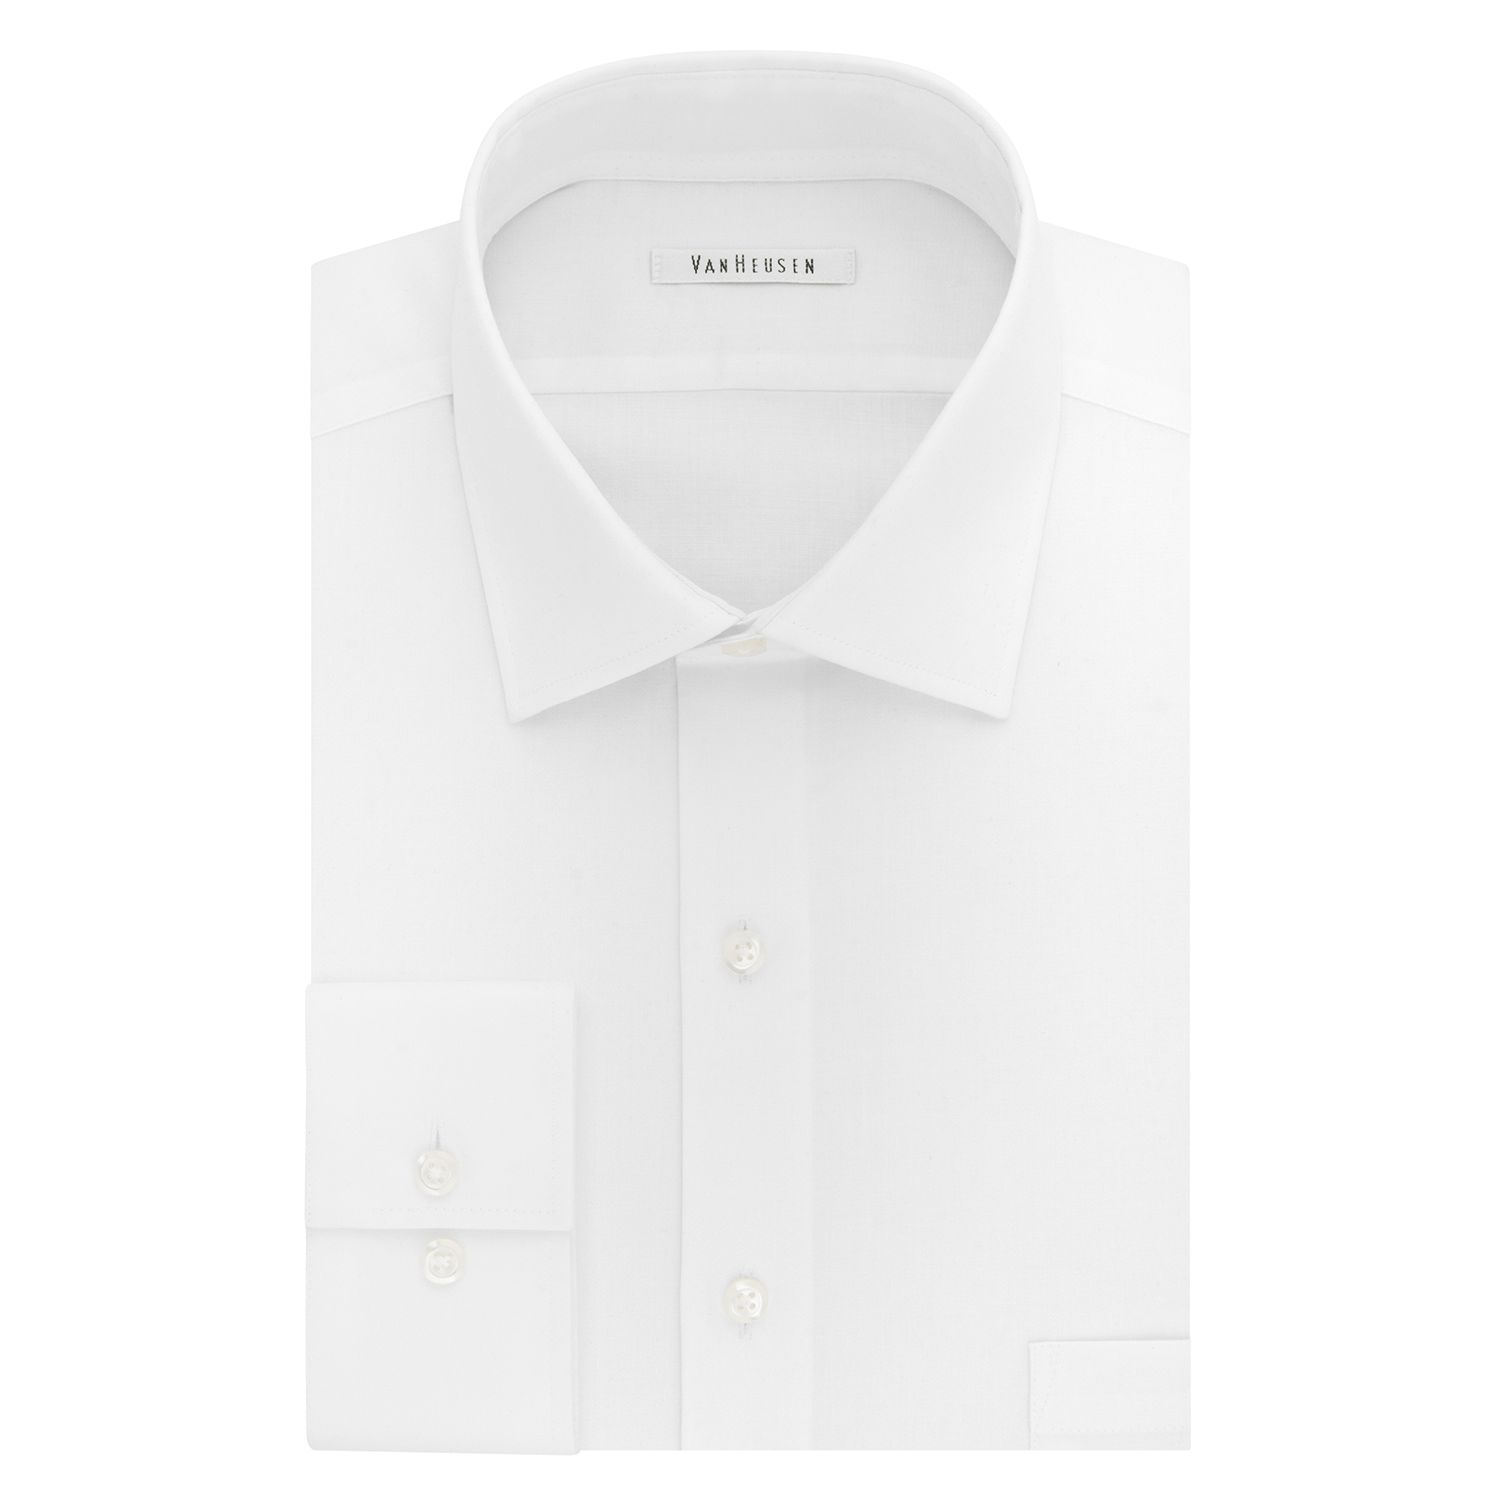 Van Heusen Dress Shirts For Men | Kohl's